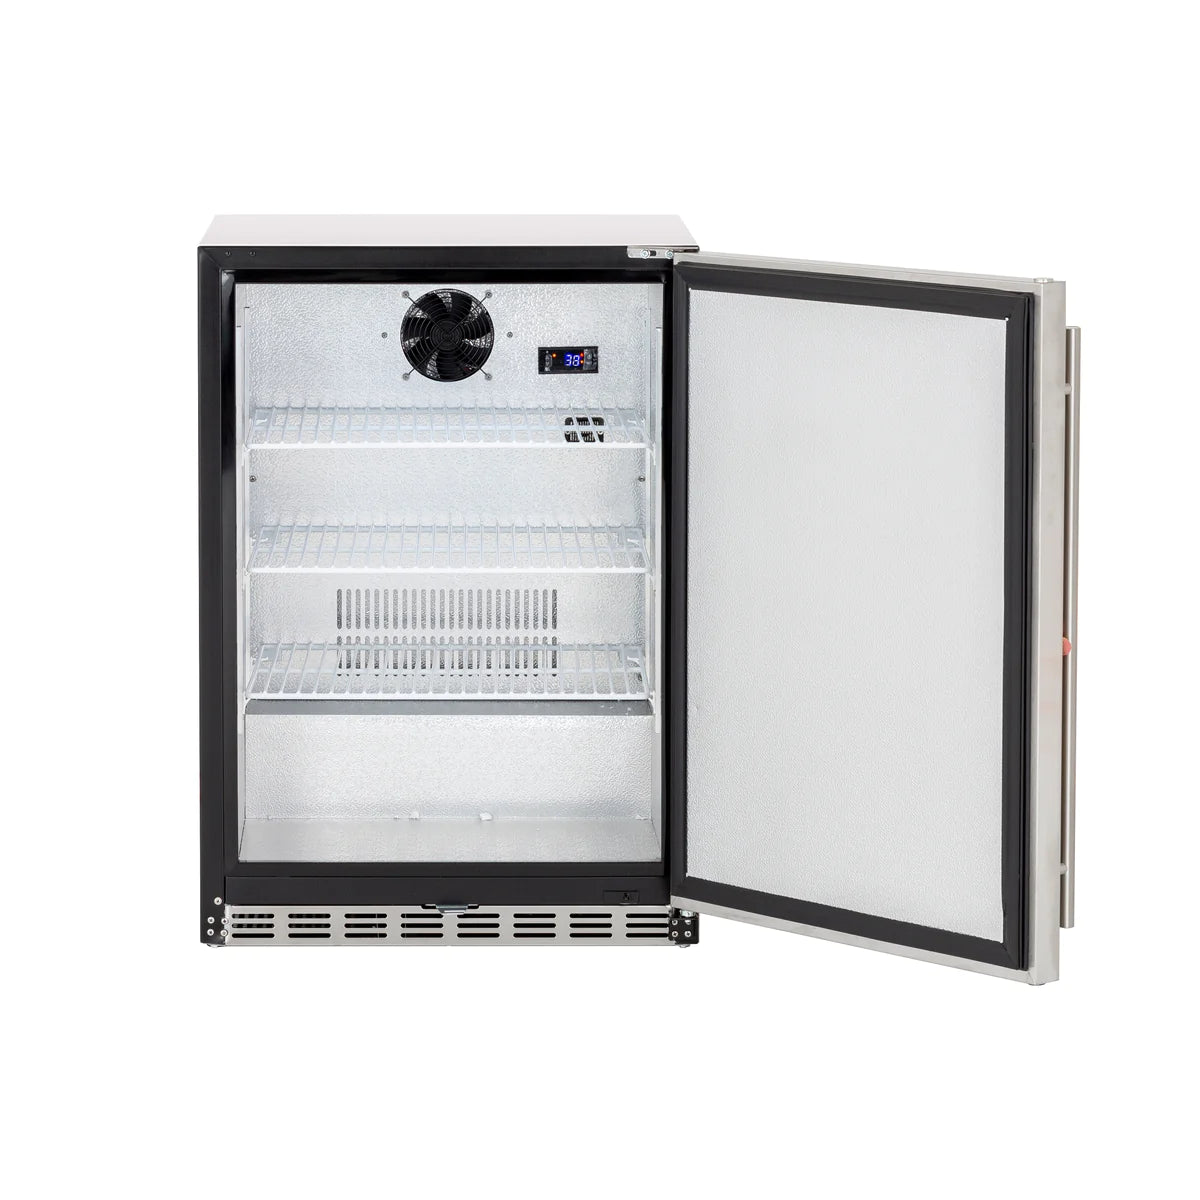 Deluxe Outdoor Rated Refrigerator - 24" 5.3c - Summerset